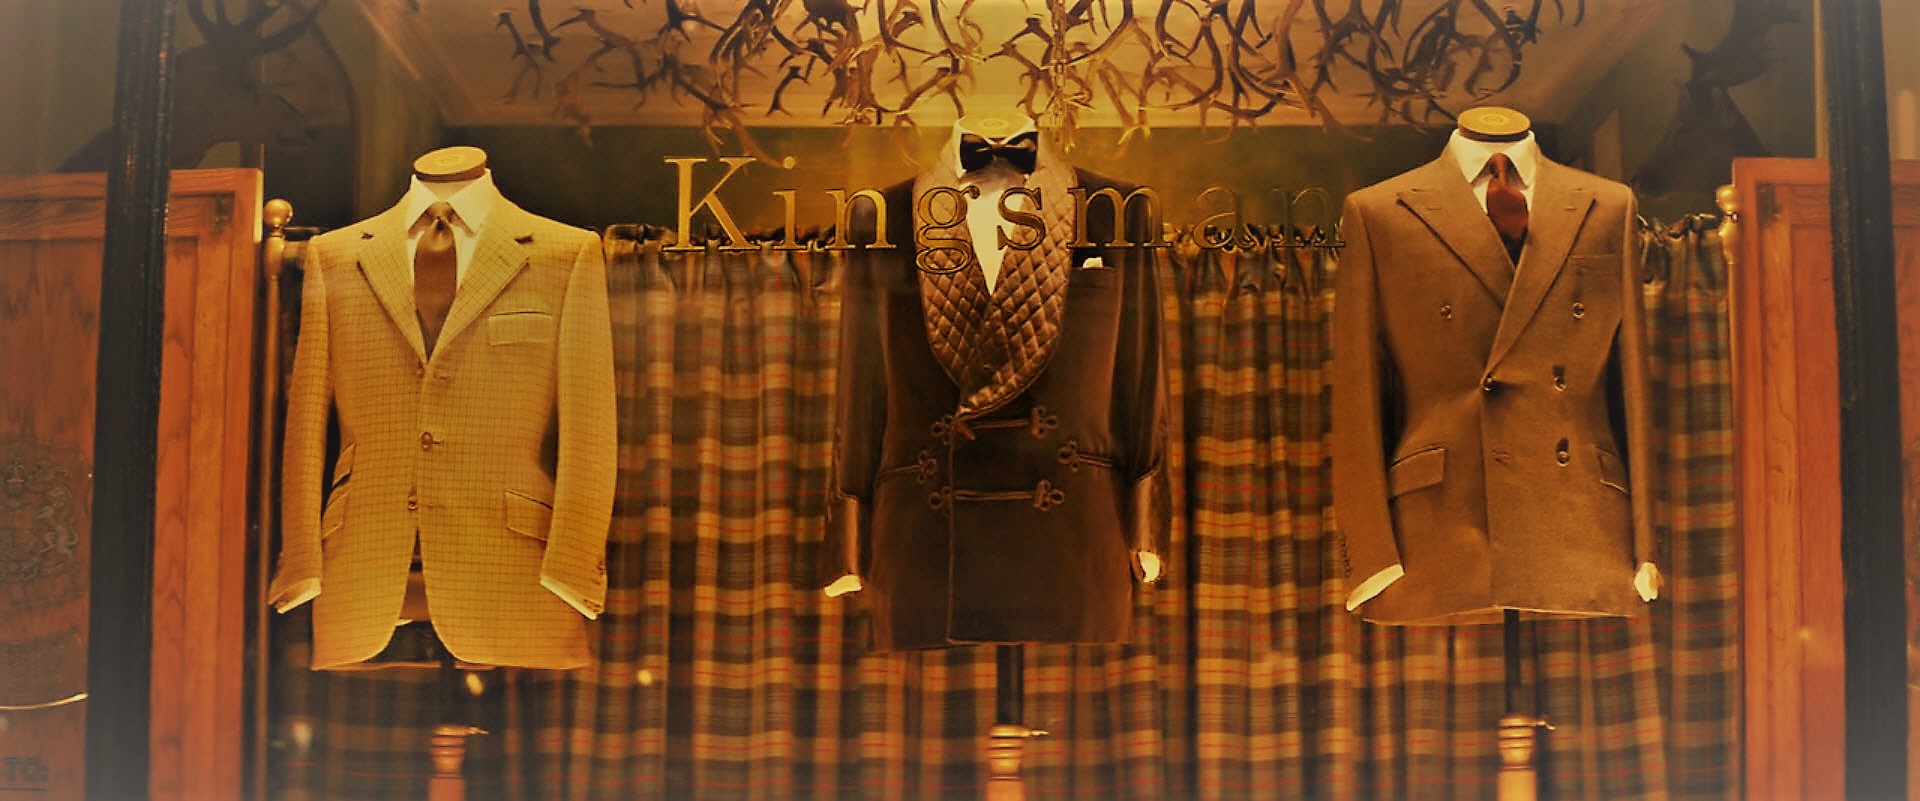 影视英语 - Kingsman - abcxyz123.com